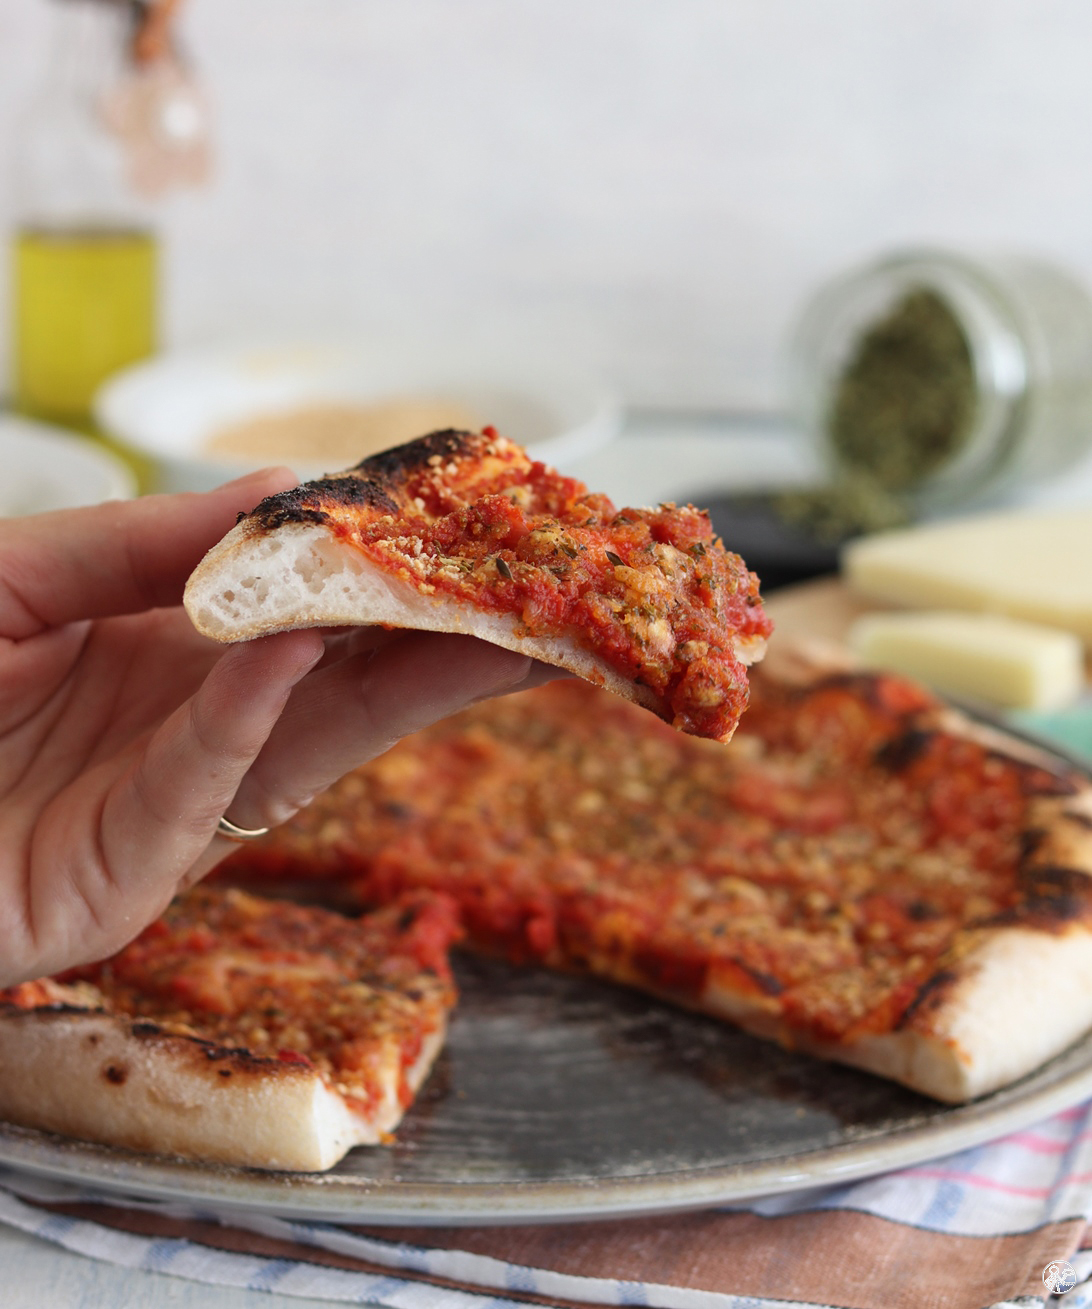 Pizza Faccia di vecchia senza glutine - La Cassata Celiaca